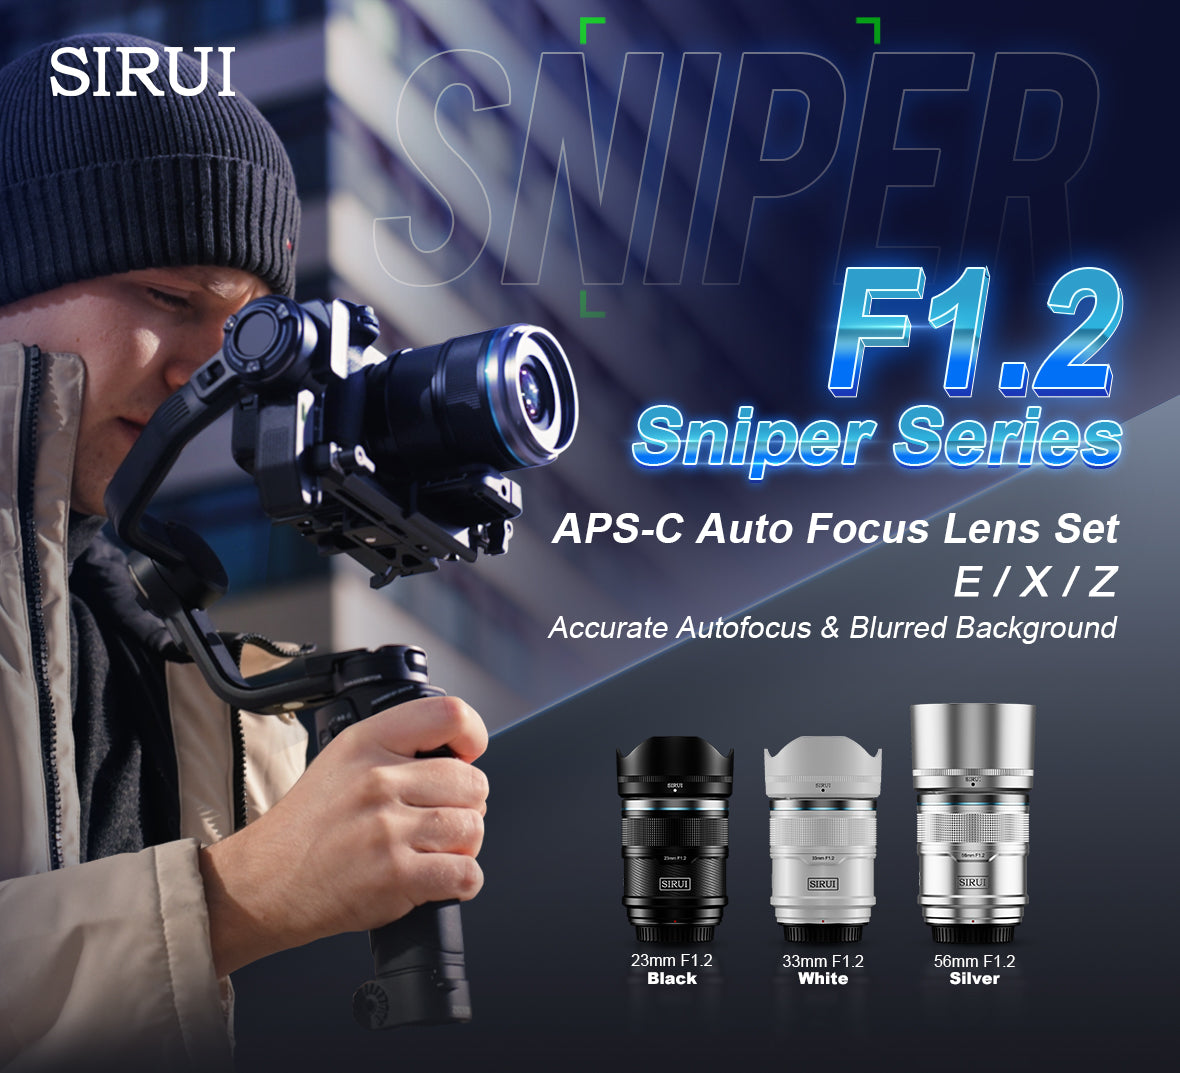 Cet ensemble d'objectifs autofocus APS-C f1.2 de la série Sniper comprend des objectifs de focale de 23 mm, 33 mm et 56 mm. Des supports E/X/Z sont fournis (compatibles avec les appareils photo Nikon, Sony, Fujifilm.) et il existe trois couleurs en option : noir, blanc et argent.